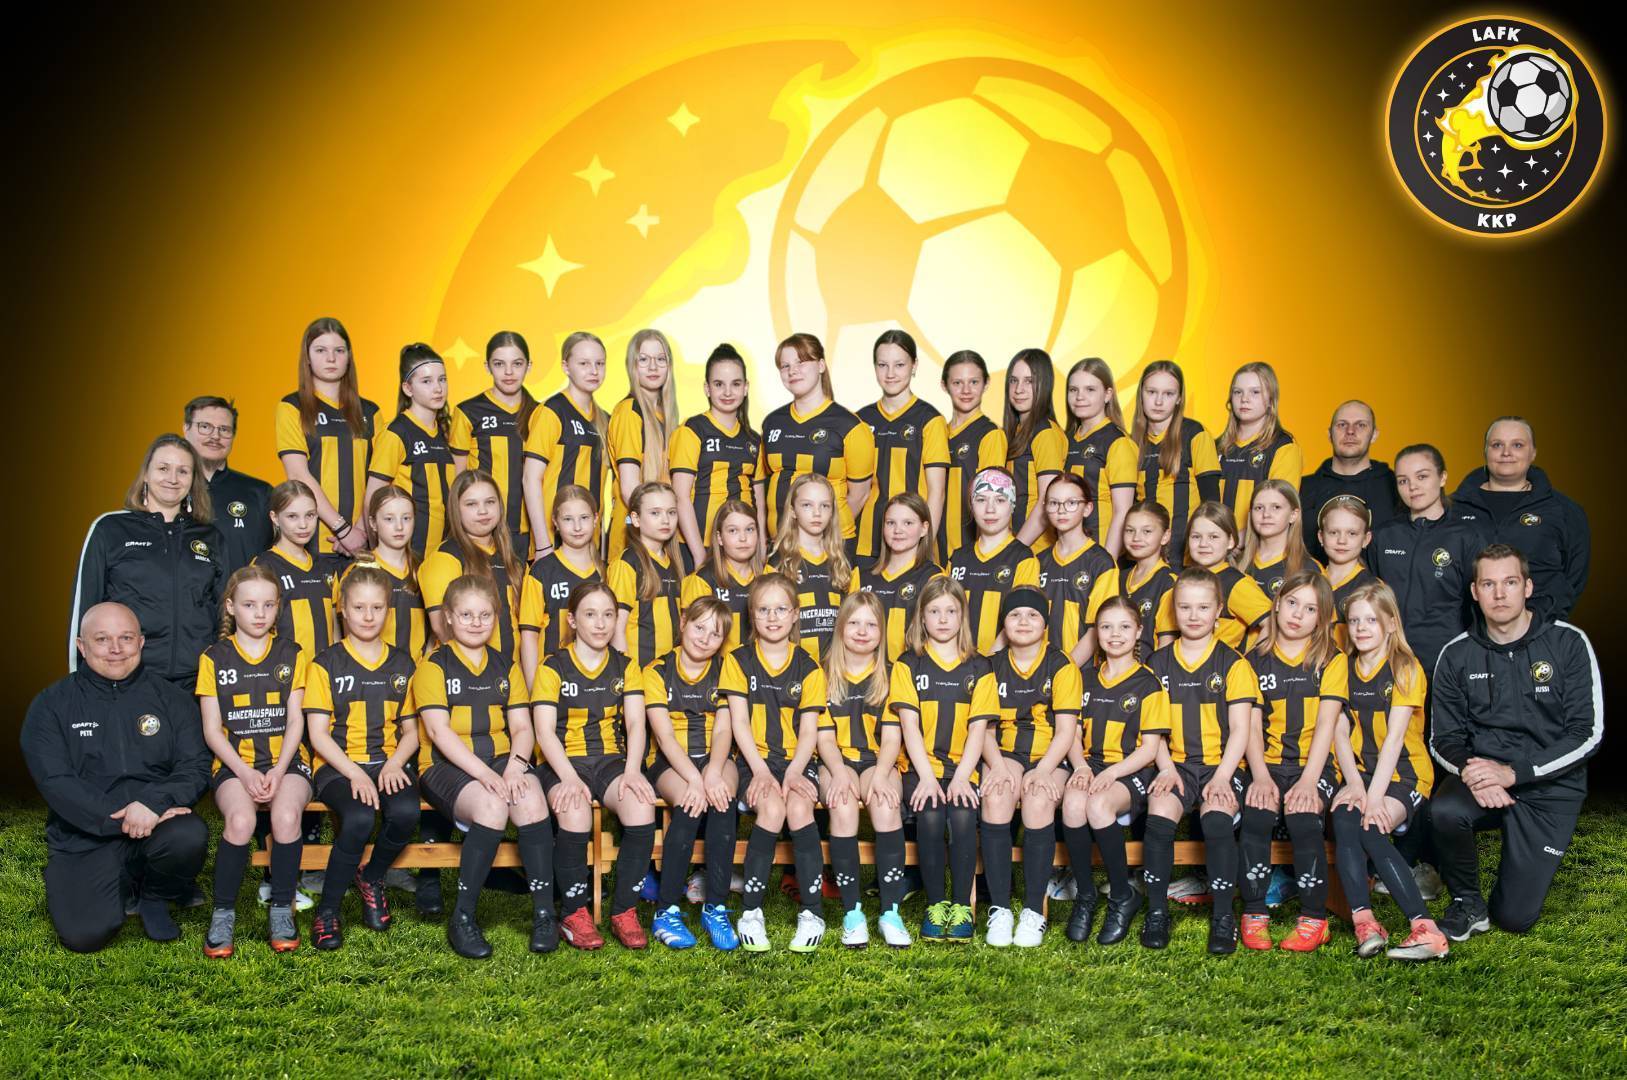 Tervetuloa LAFK-KKP Tytöt (2010-2014) joukkueeseen!